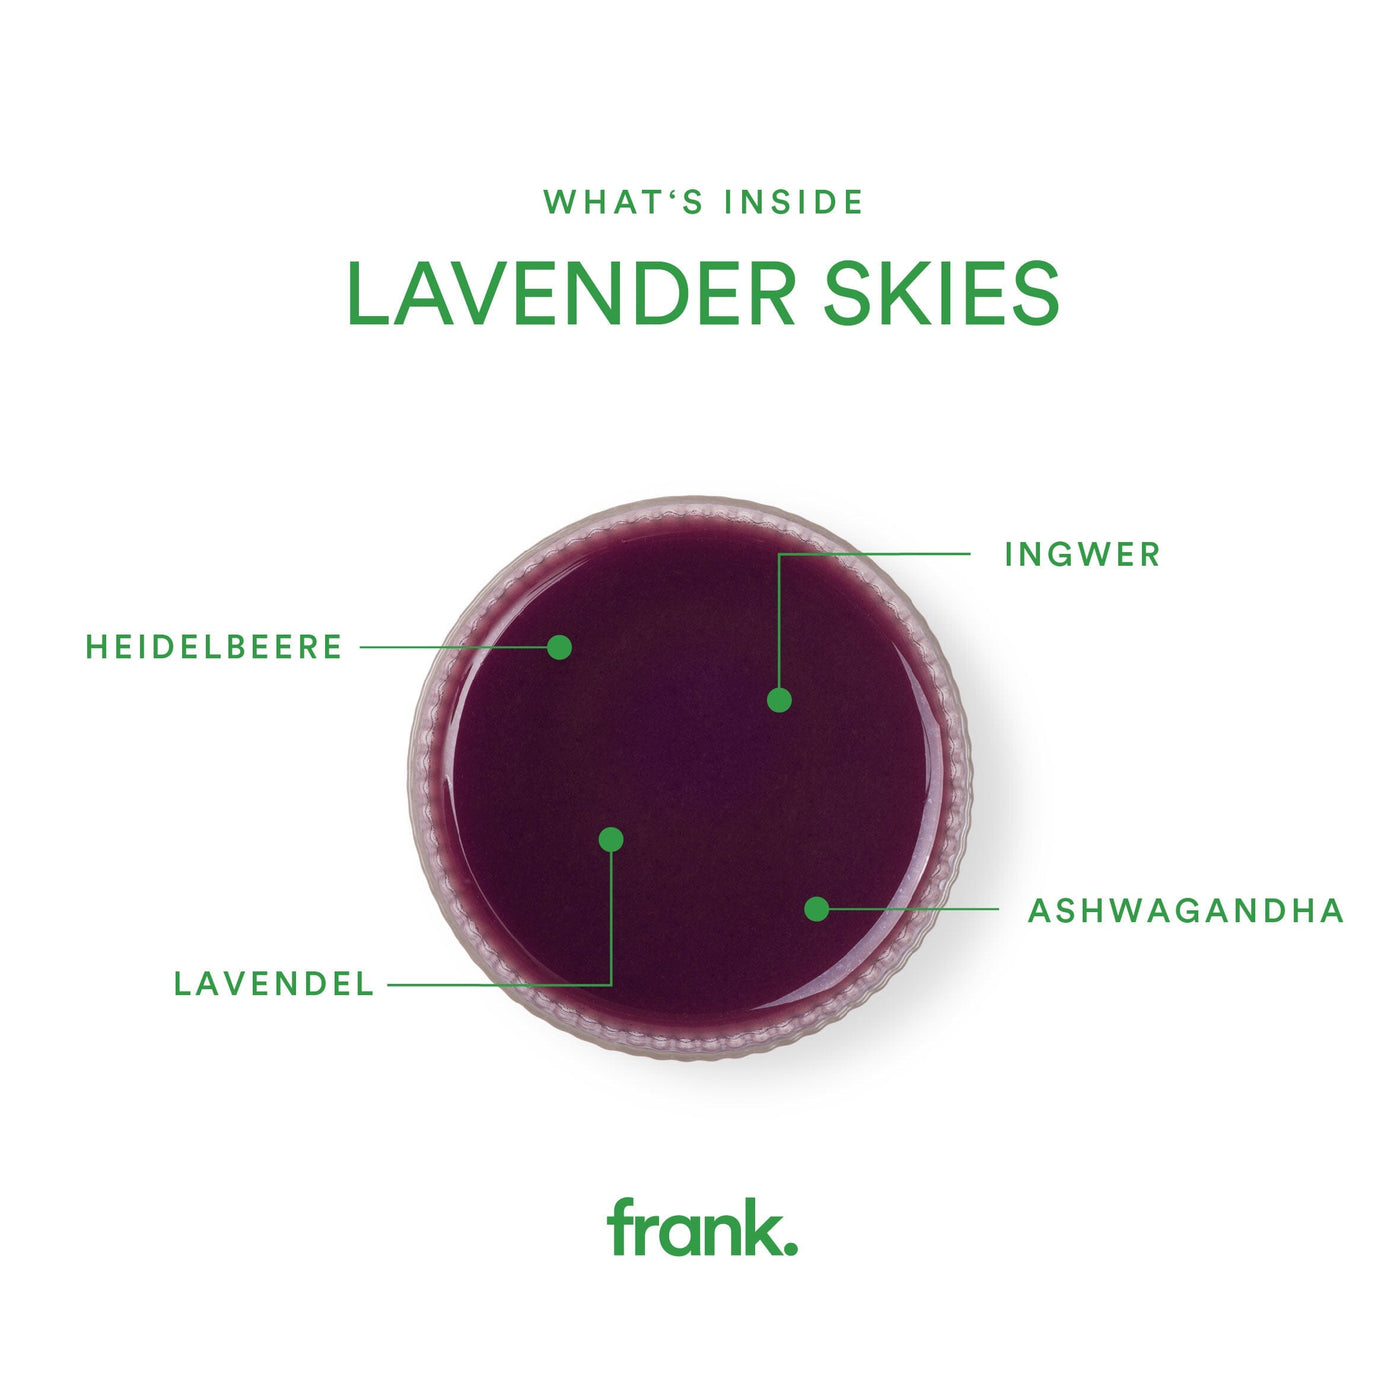 Darstellung des Ingwershots Lavender Skies mit Ingwer, Lavendel, Heidelbeere, Ashwagandha und Apfel von frank in einem Glas